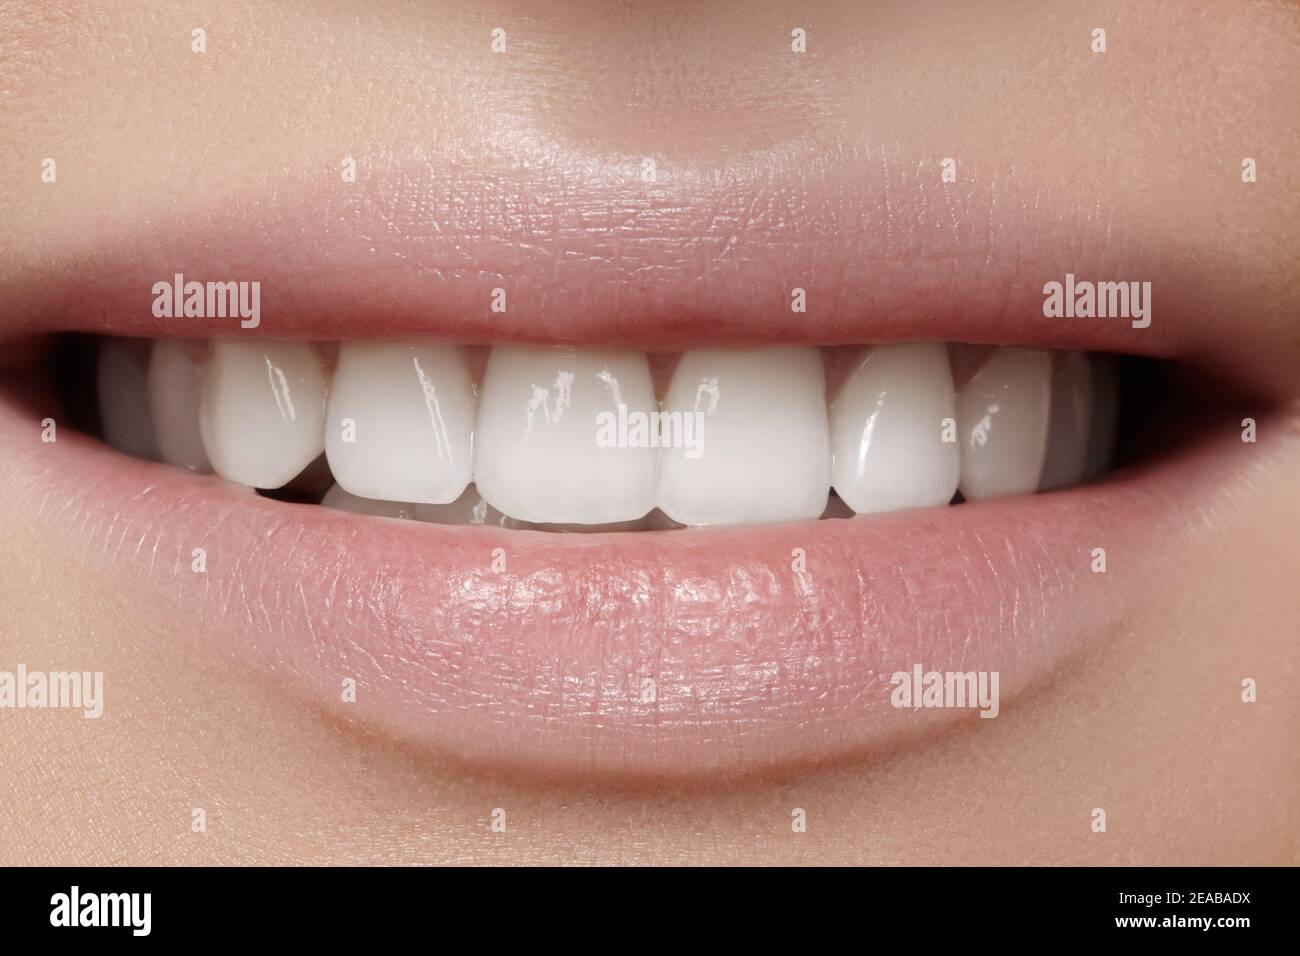 Un sourire éclatant et des dents plus blanches. Photo dentaire. Macro gros plan de la bouche parfaite de la femme, rouge à lèvres. Banque D'Images